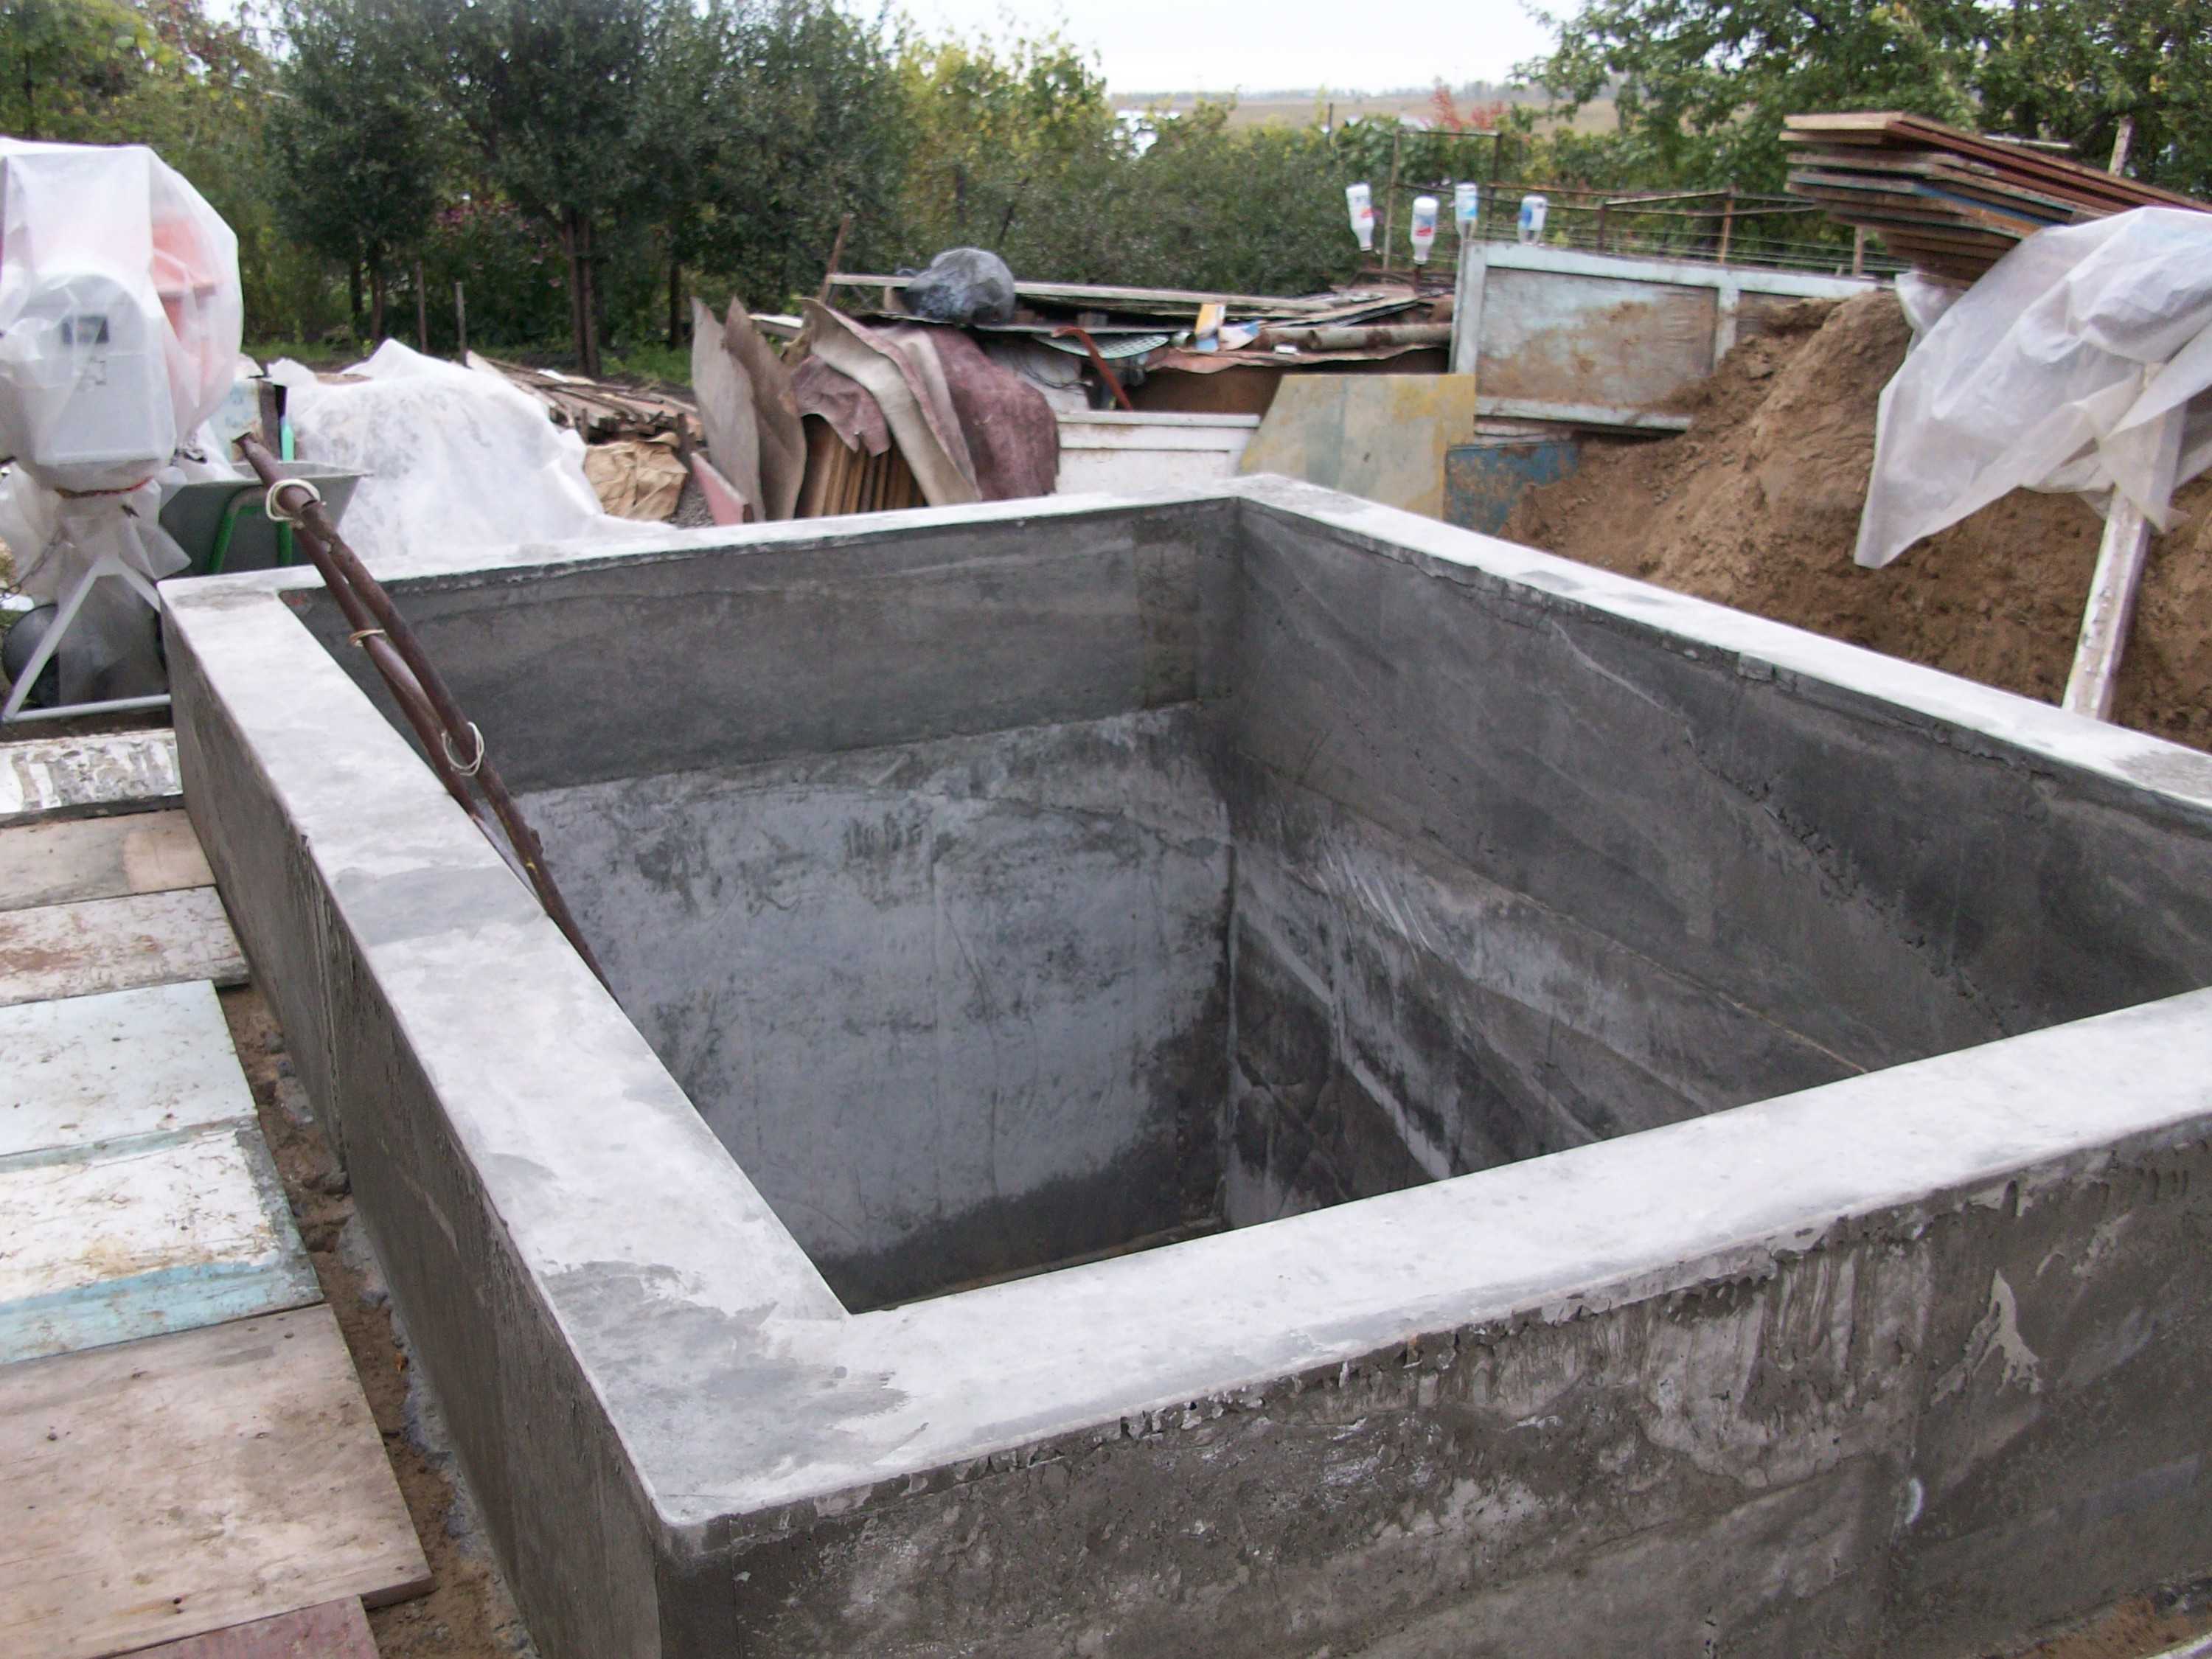 Как сделать бассейн из бетона своими руками и что для этого нужно?